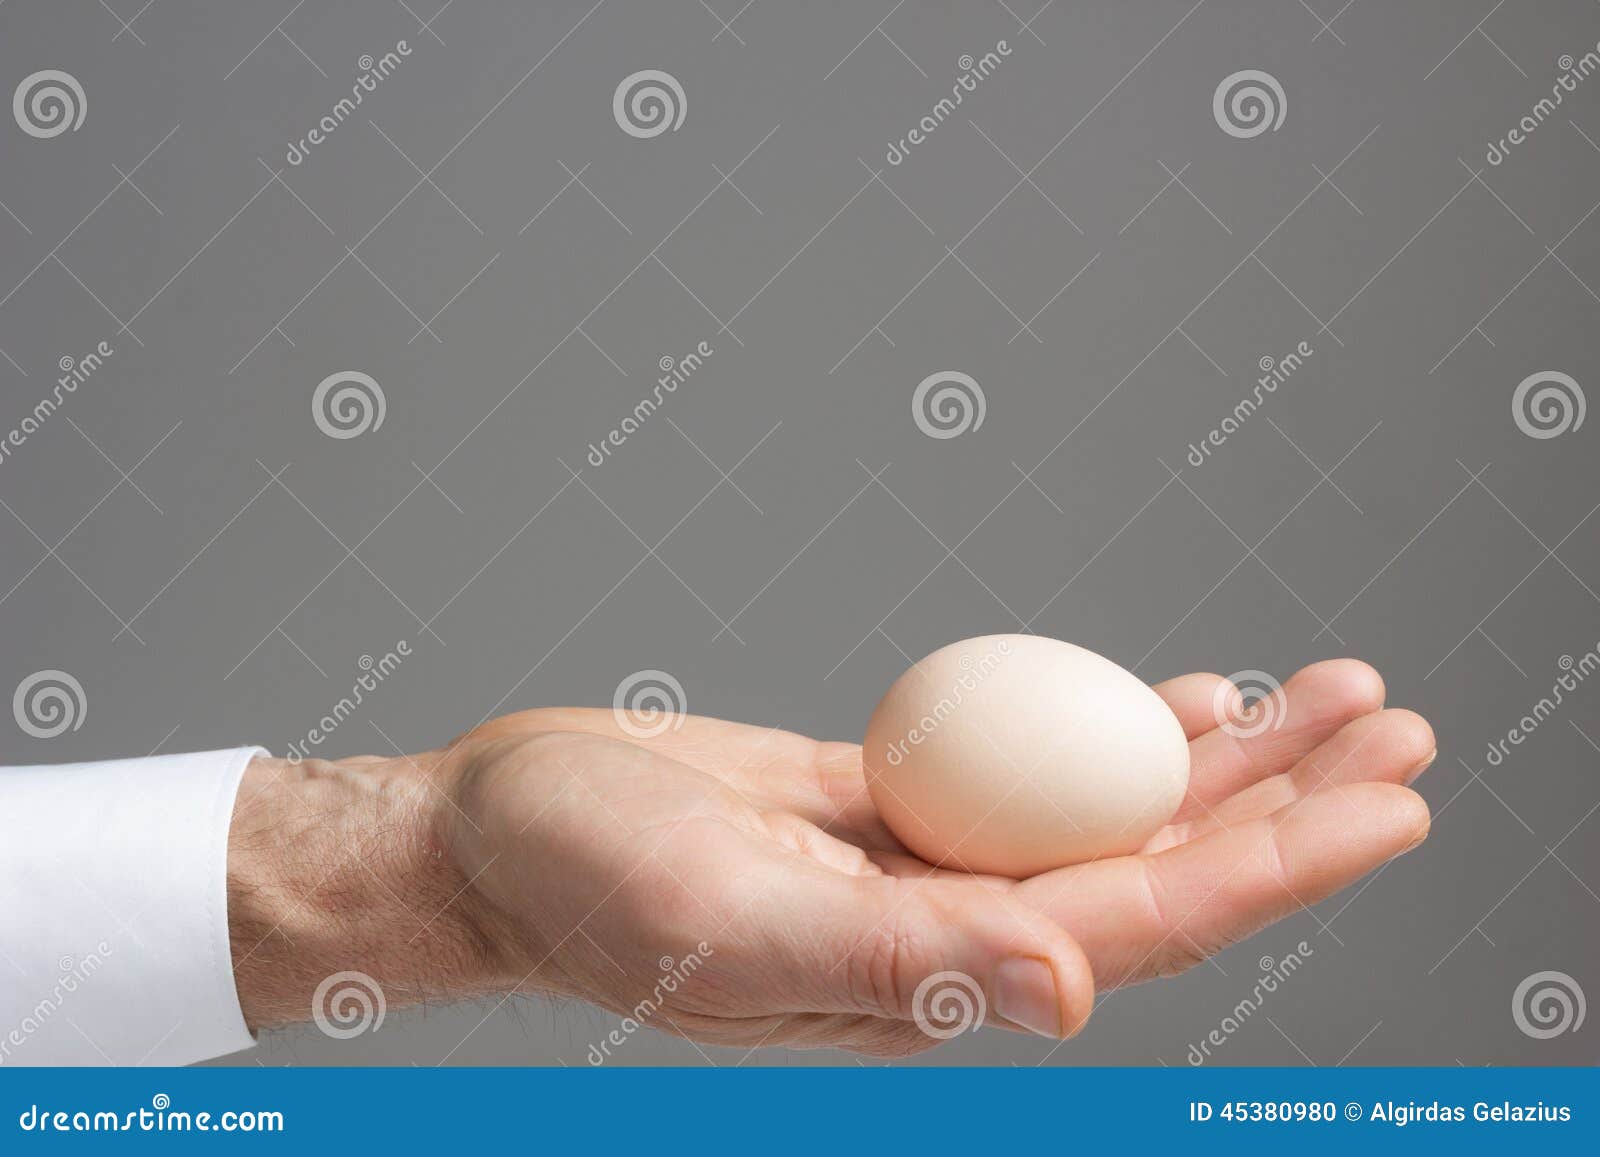 Одно яичко стало. Два яйца. Два яйца в руке. Держи яйцо.